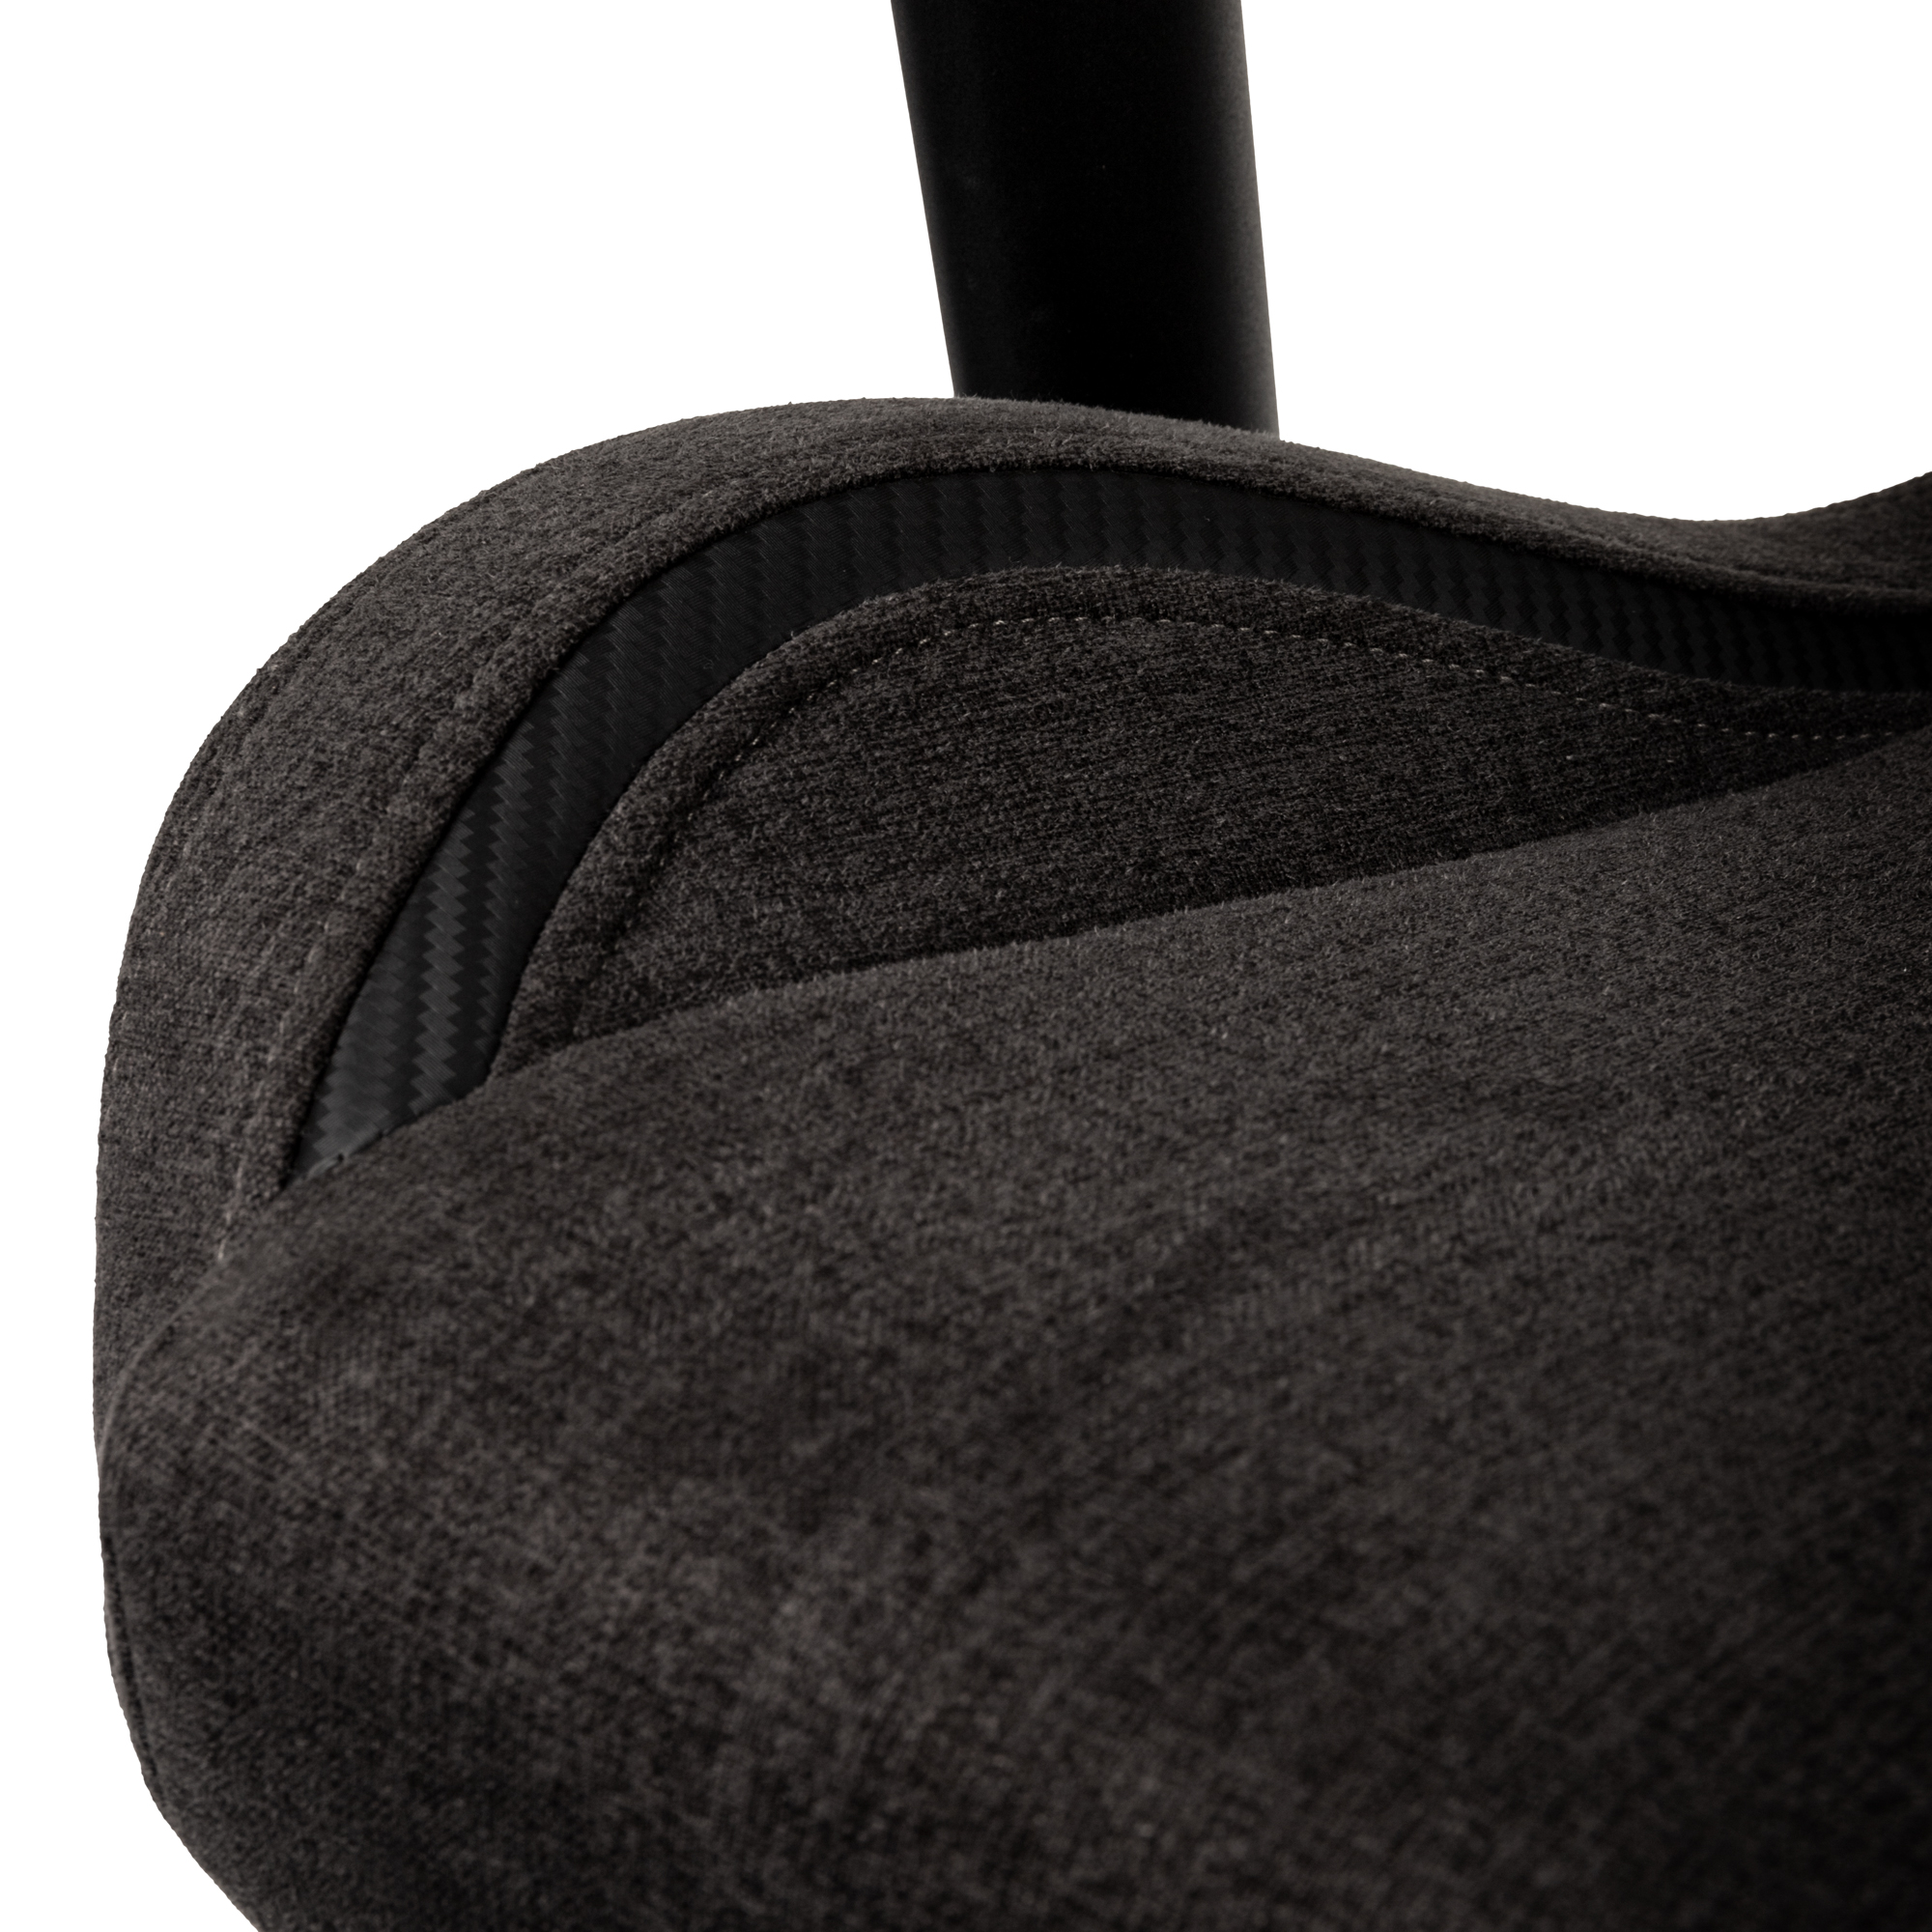 Gamer szék noblechairs EPIC Compact TX Antracit/Carbon